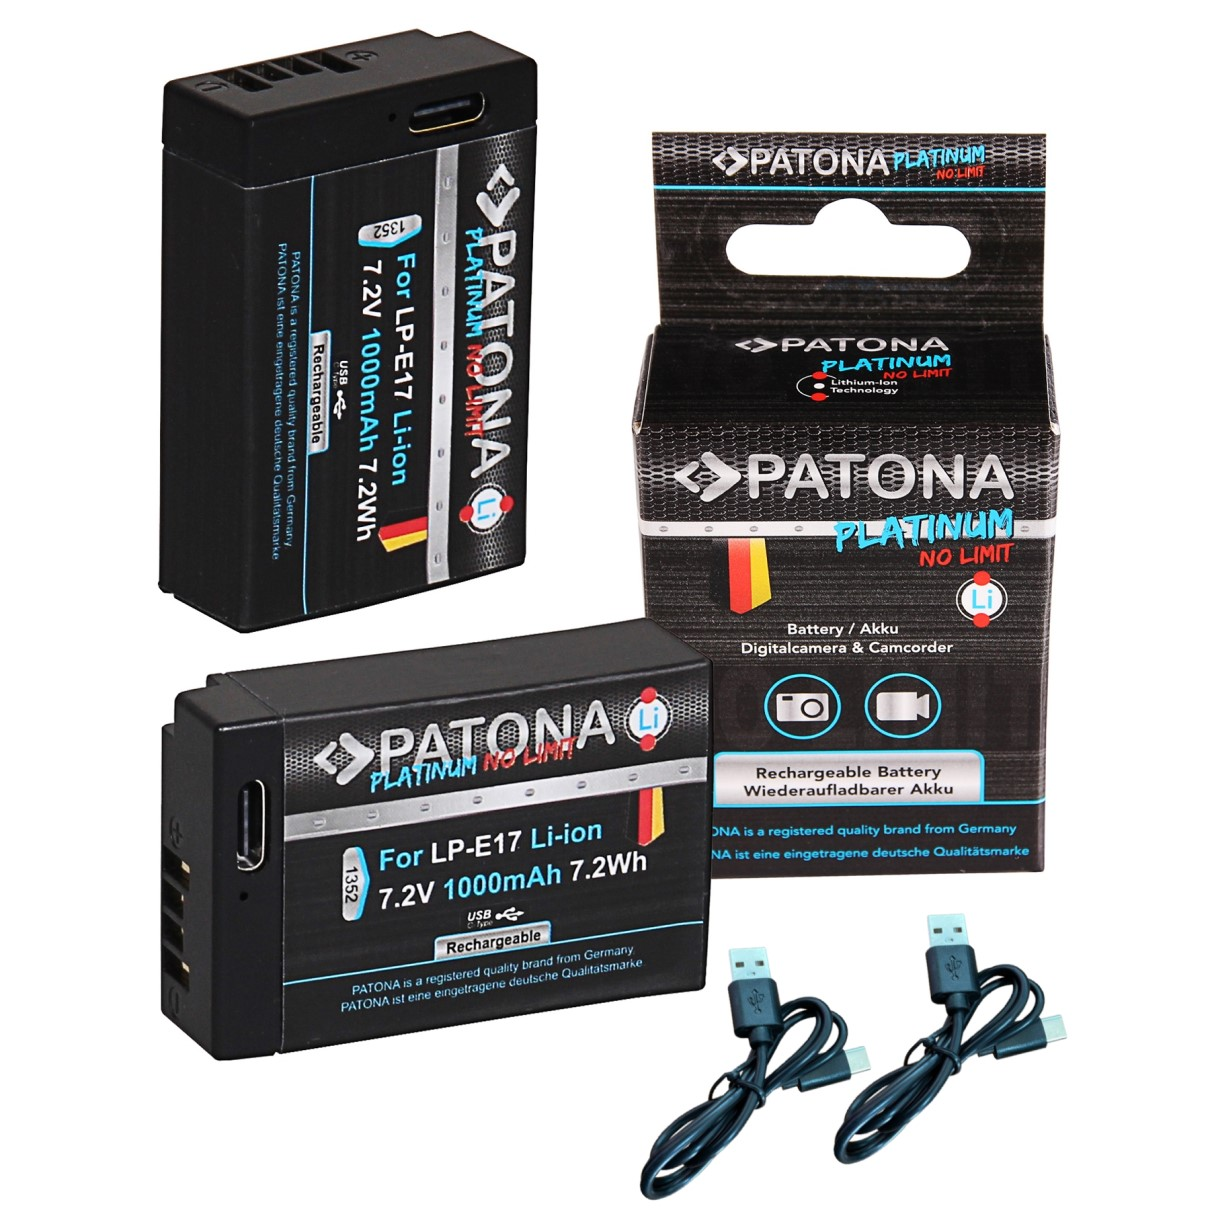 PATONA 2x Platinum Akku für 7.2 Volt, 1000mAh  LP-E17 Ersatzakku, Li-Ion